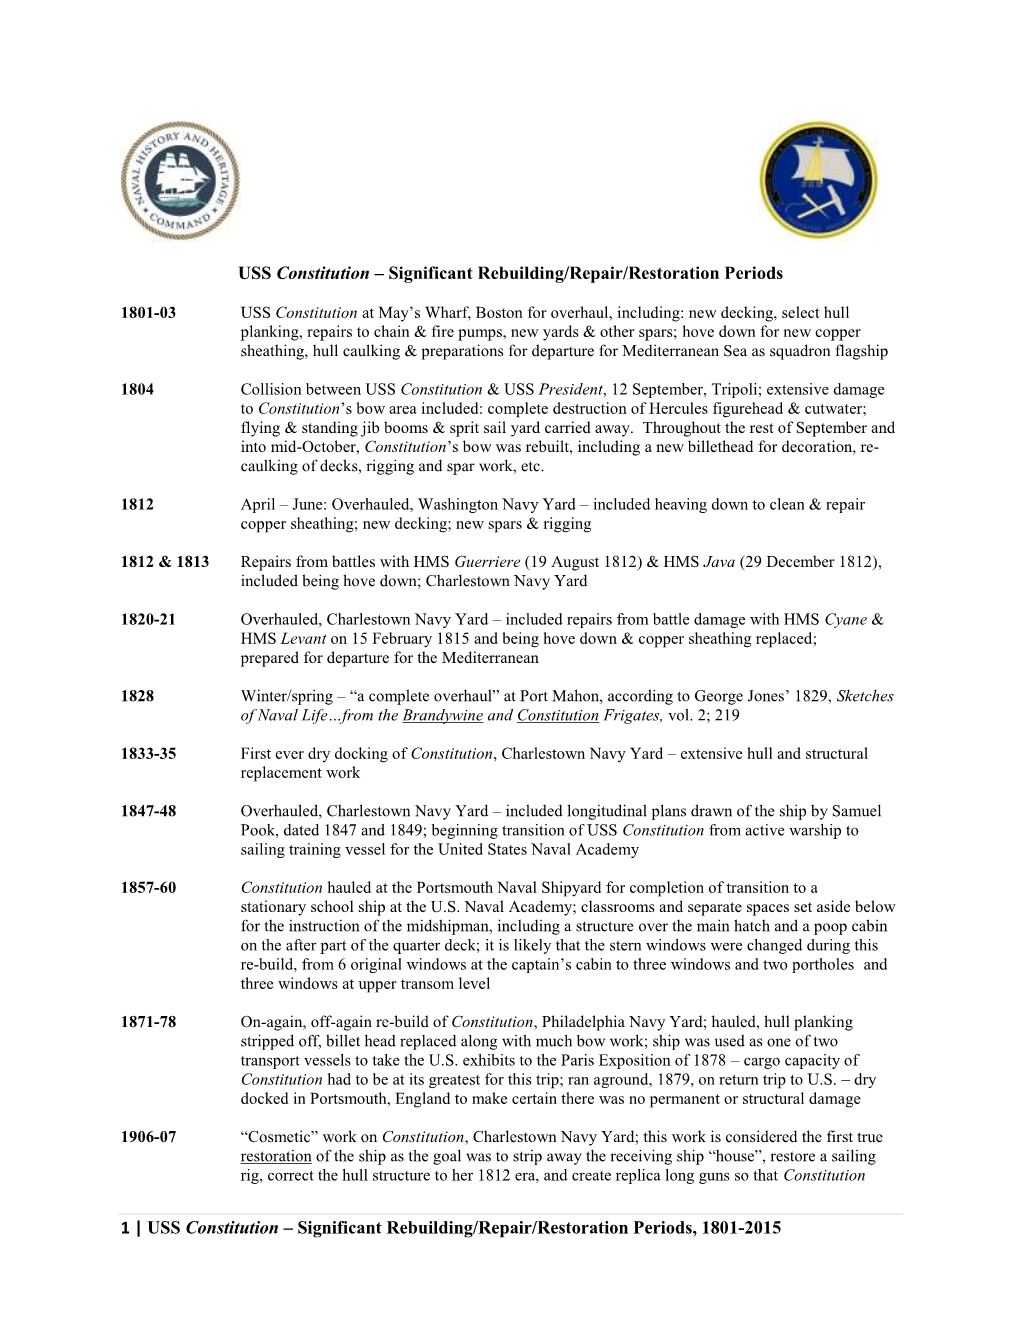 1 | USS Constitution – Significant Rebuilding/Repair/Restoration Periods, 1801-2015